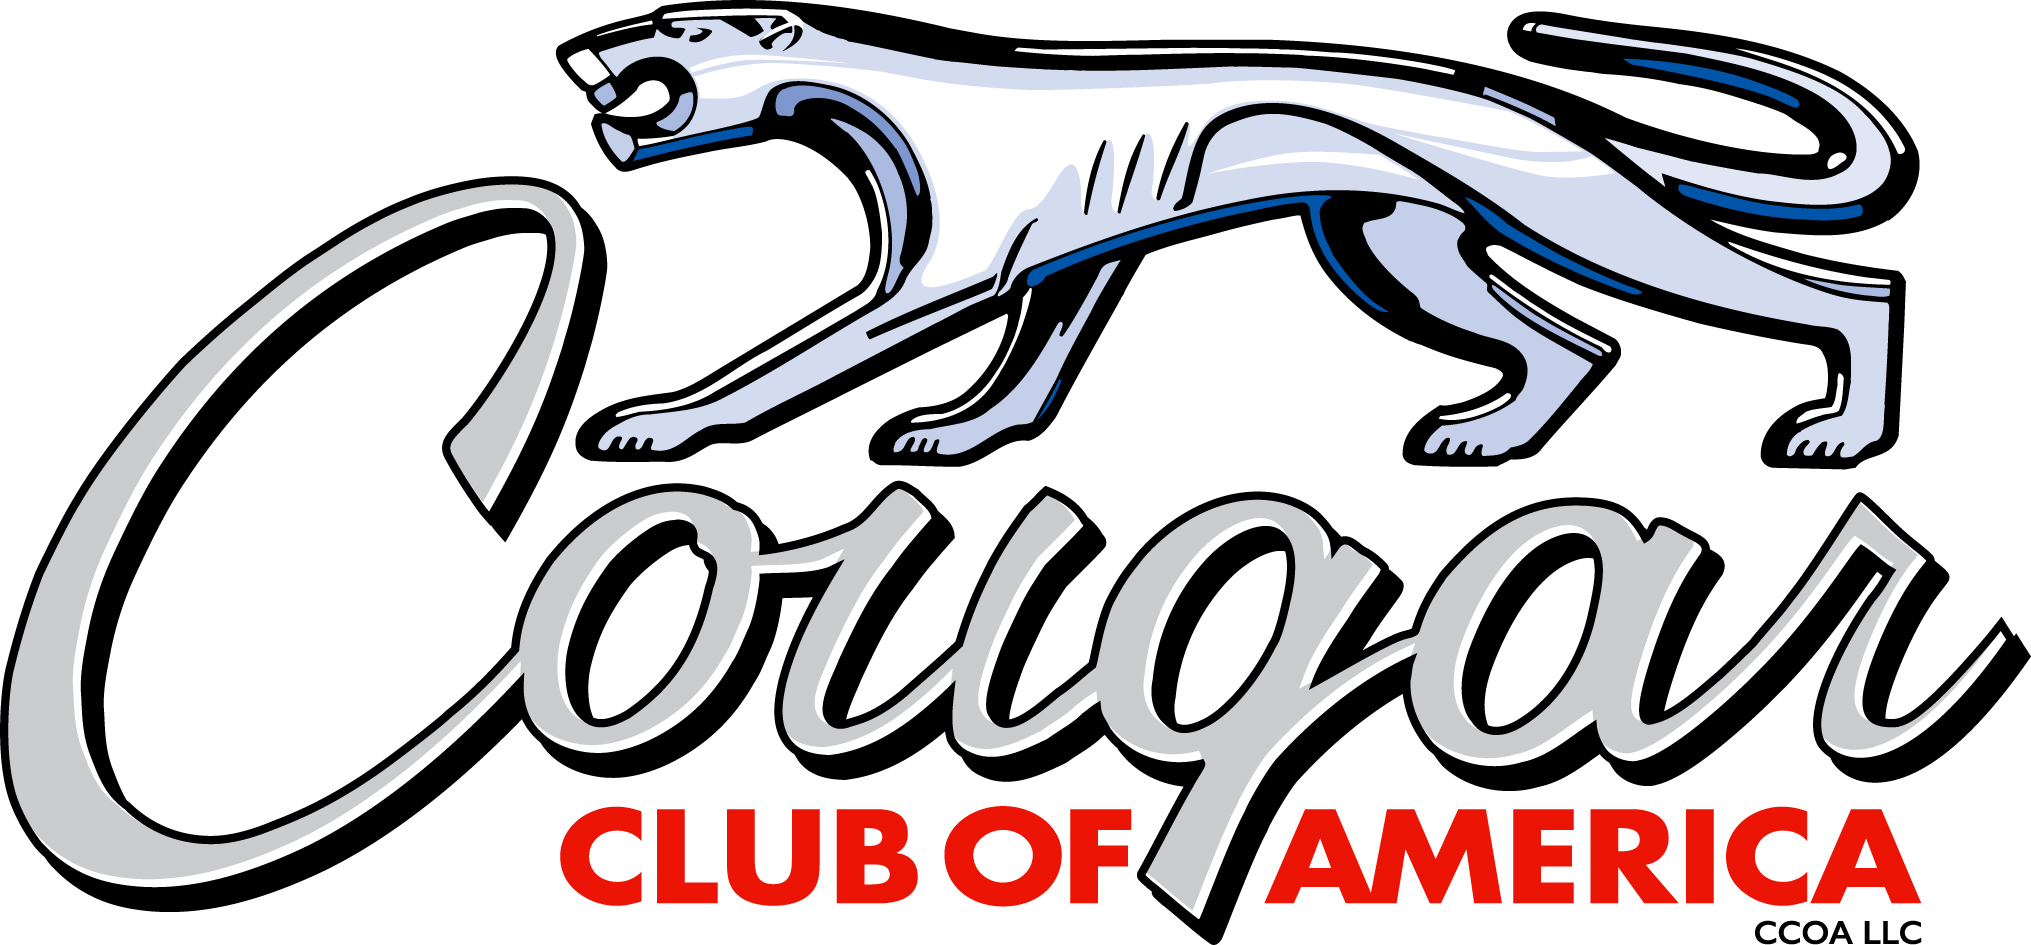 Cougar Club of America logo